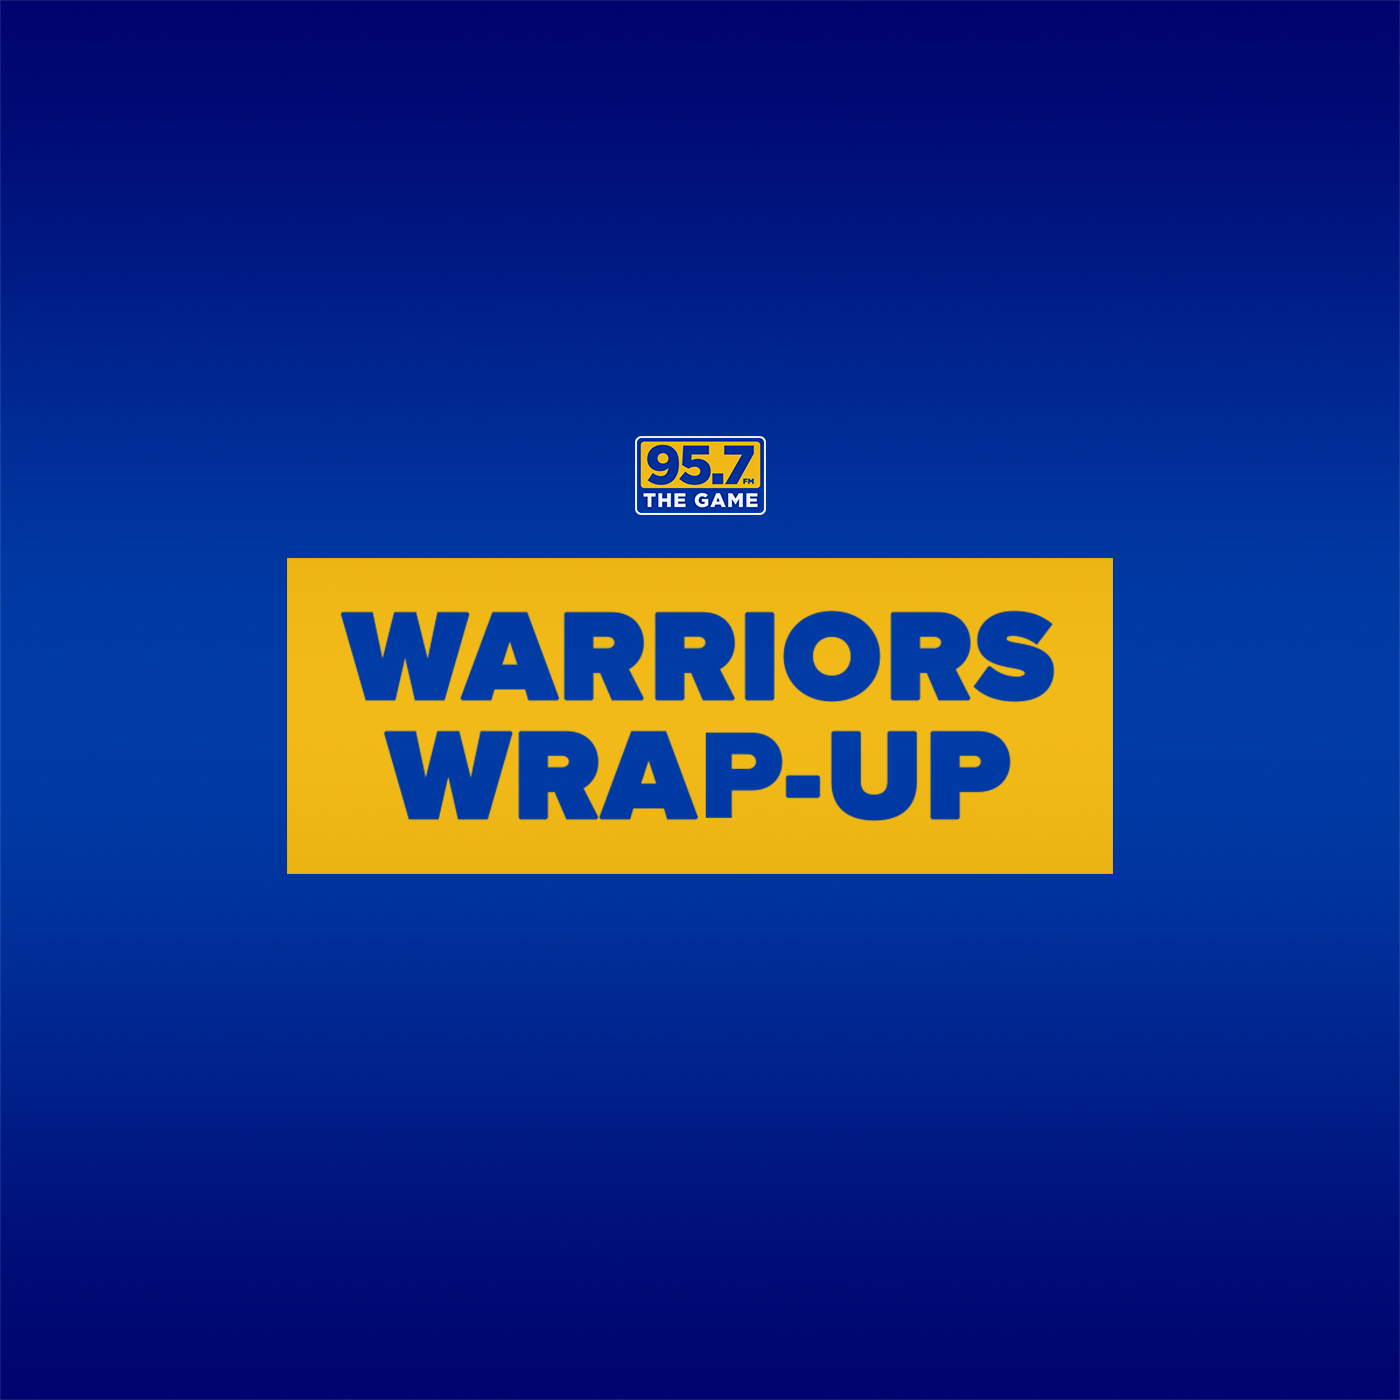 Klay scores 32 points in Warriors win vs. Jazz